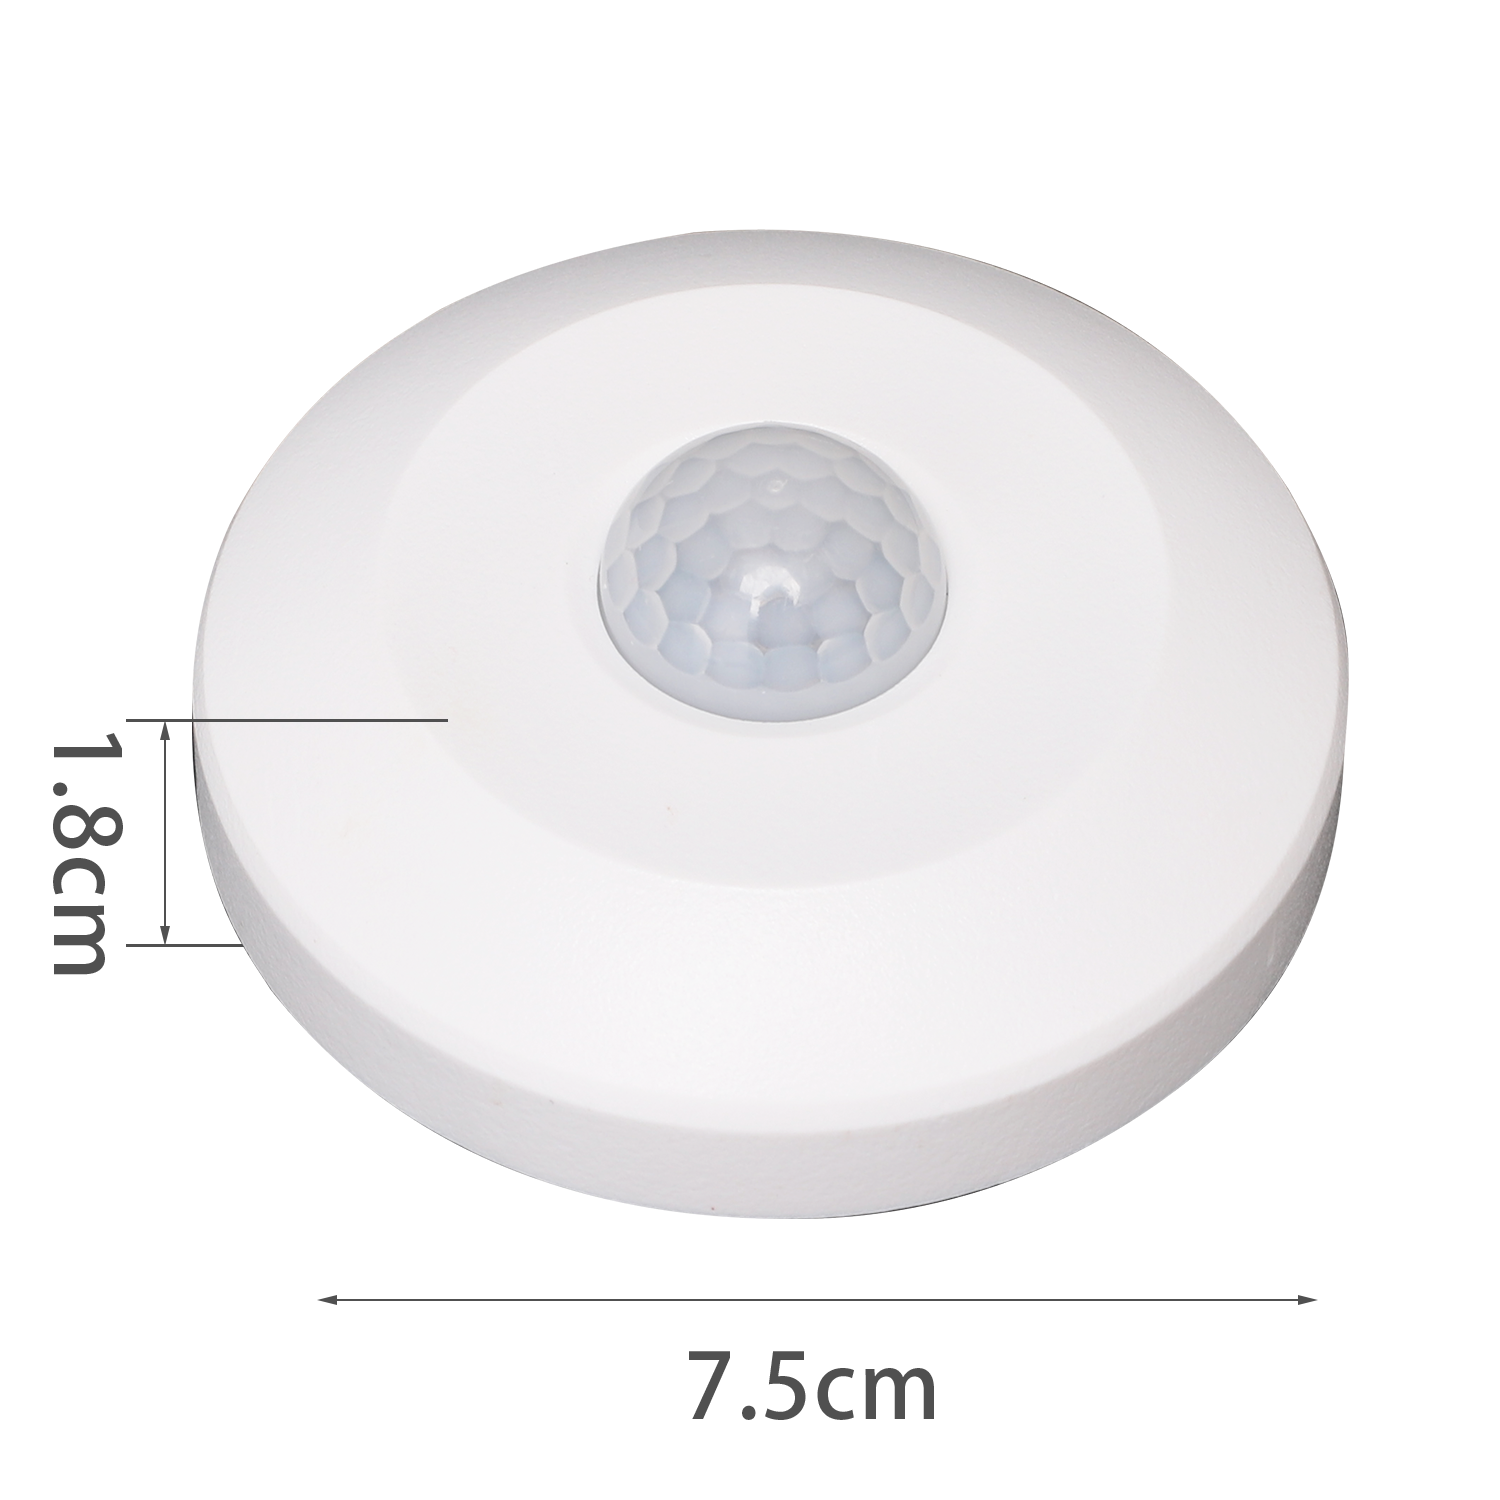 detector de movimiento por infrarrojos para montar en techo, blanco ø18*H75mm